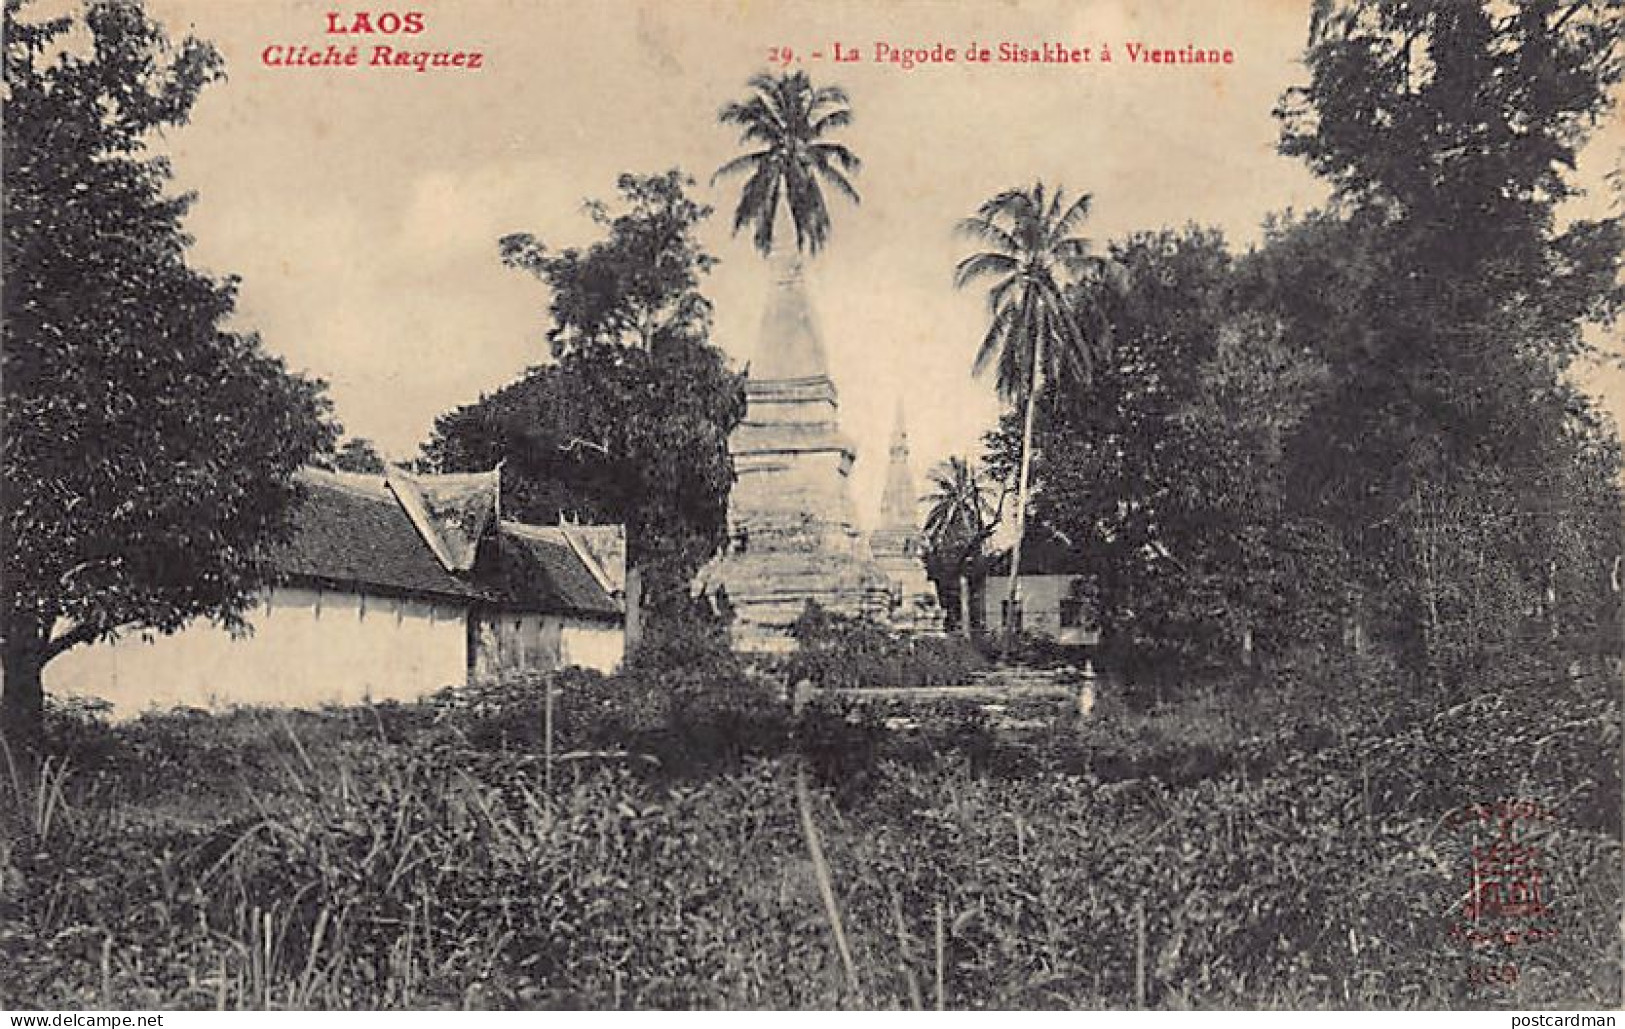 Laos - VIENTIANE - La Pagode De Sisakhet - Cliché Raquez 29 - Ed. A. F. Decoly 269 - Laos